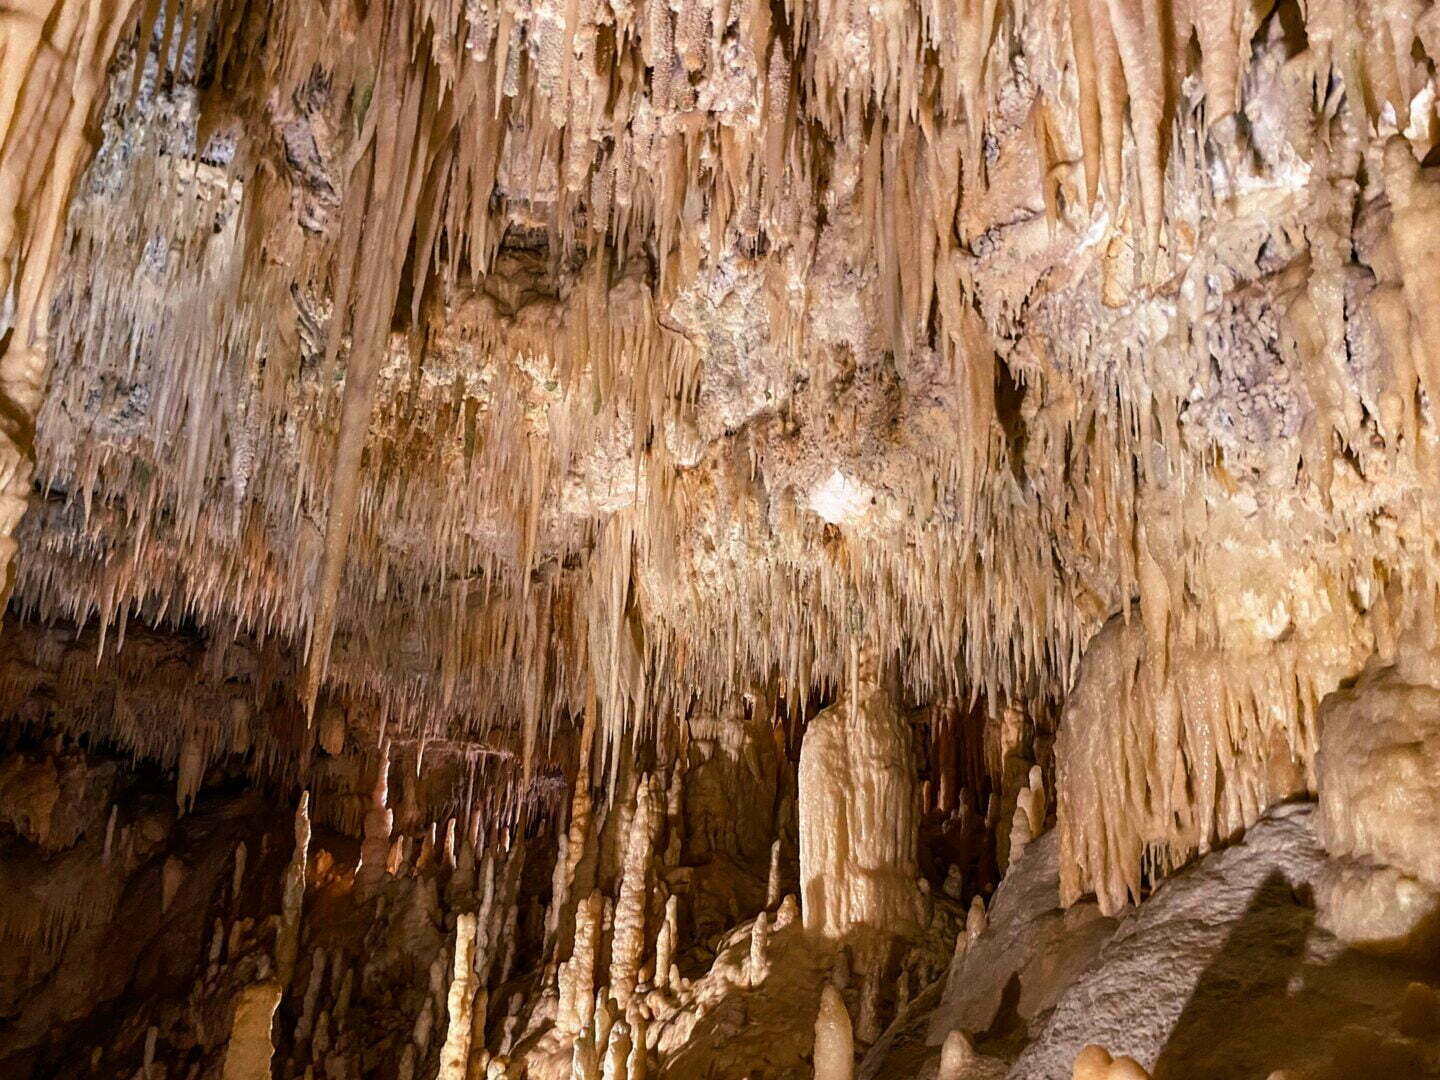 Italie - La plus belle grotte de stalactites du monde, la grotte de Castellana